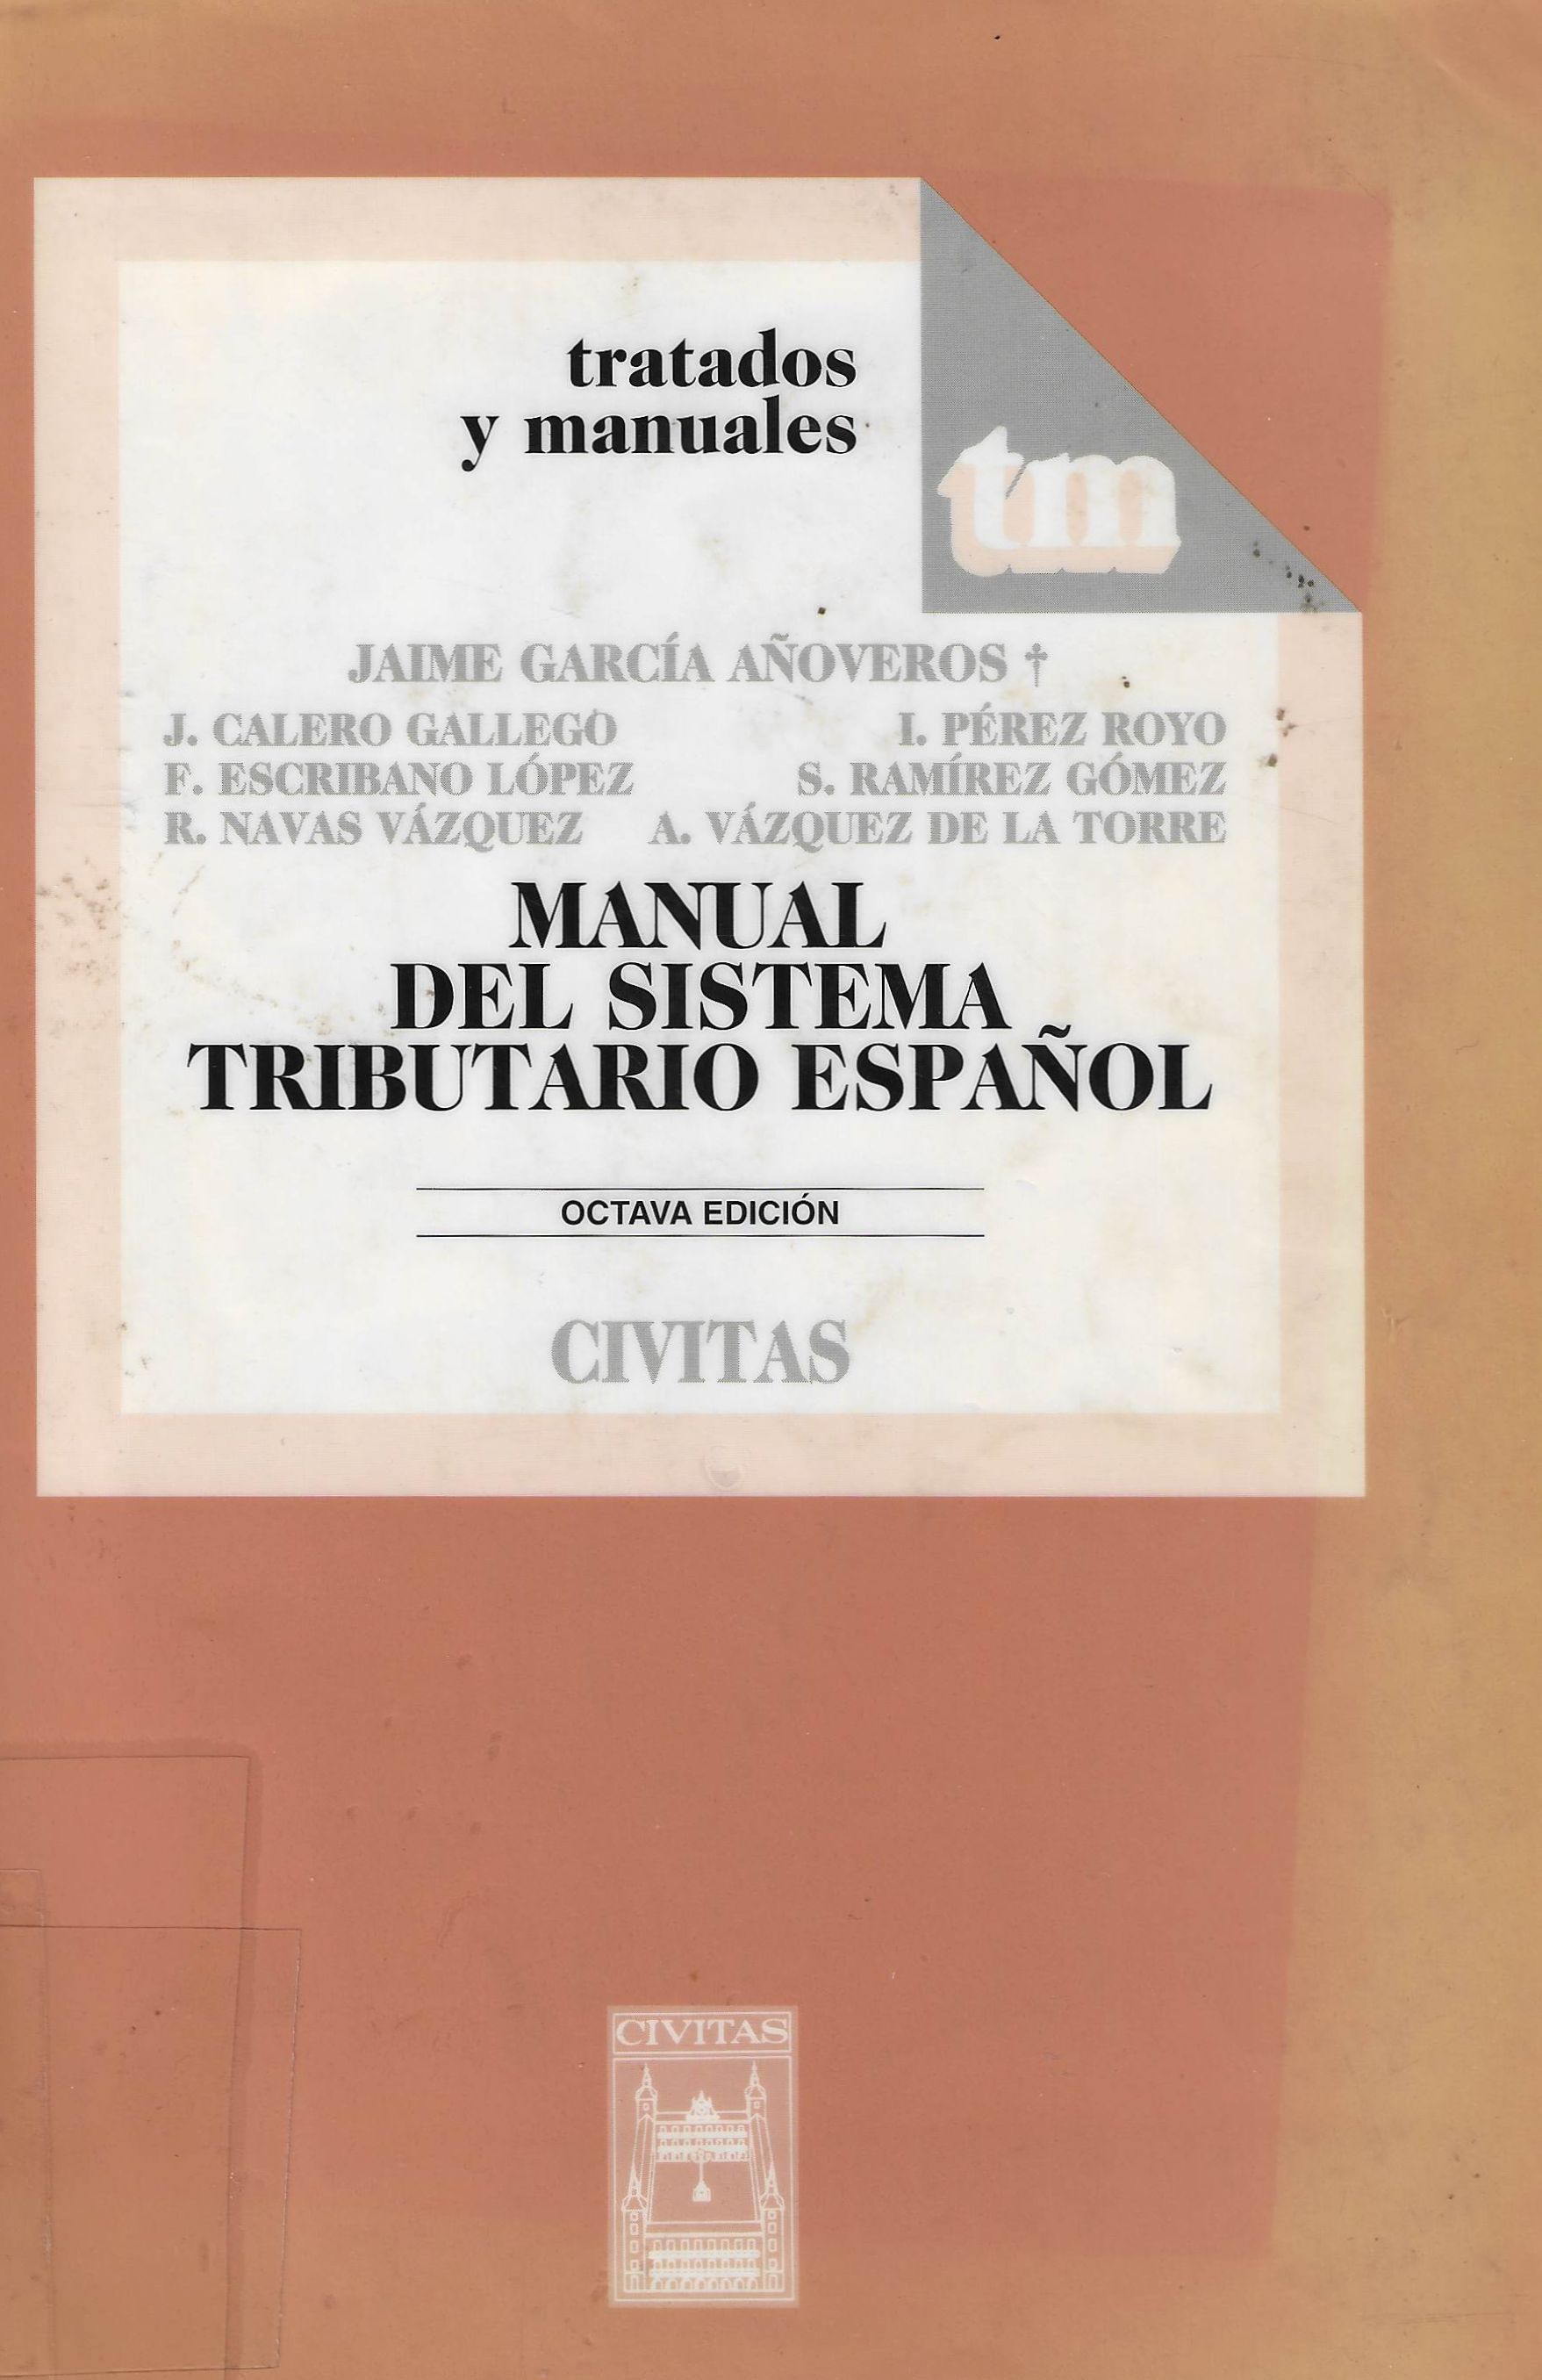 Imagen de portada del libro Manual del sistema tributario español